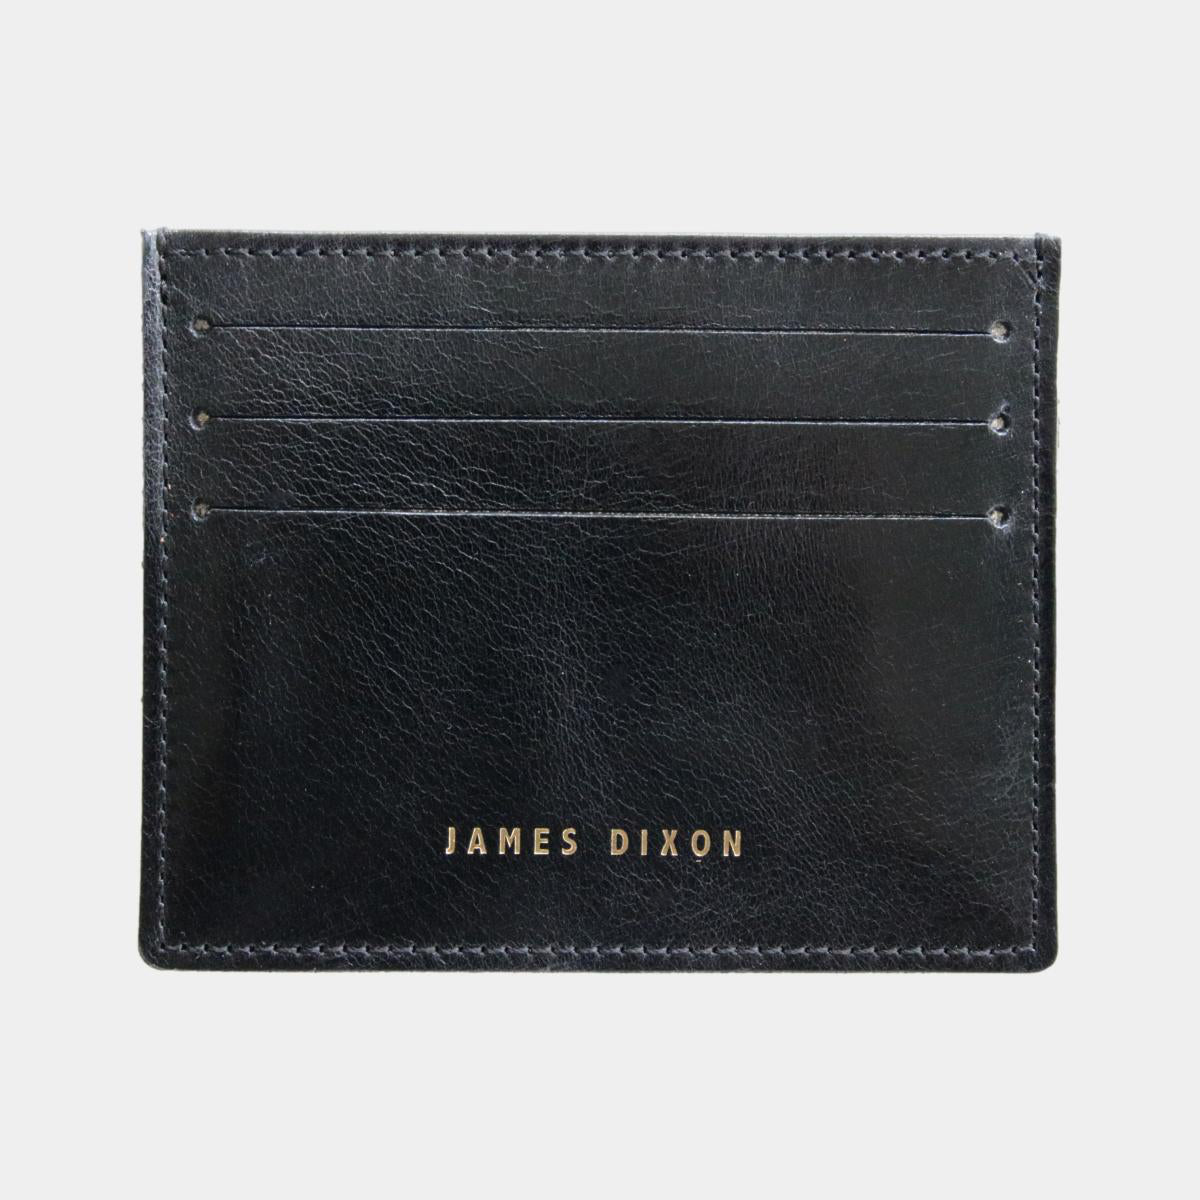 jd0327 james dixon poco classic black wallet front